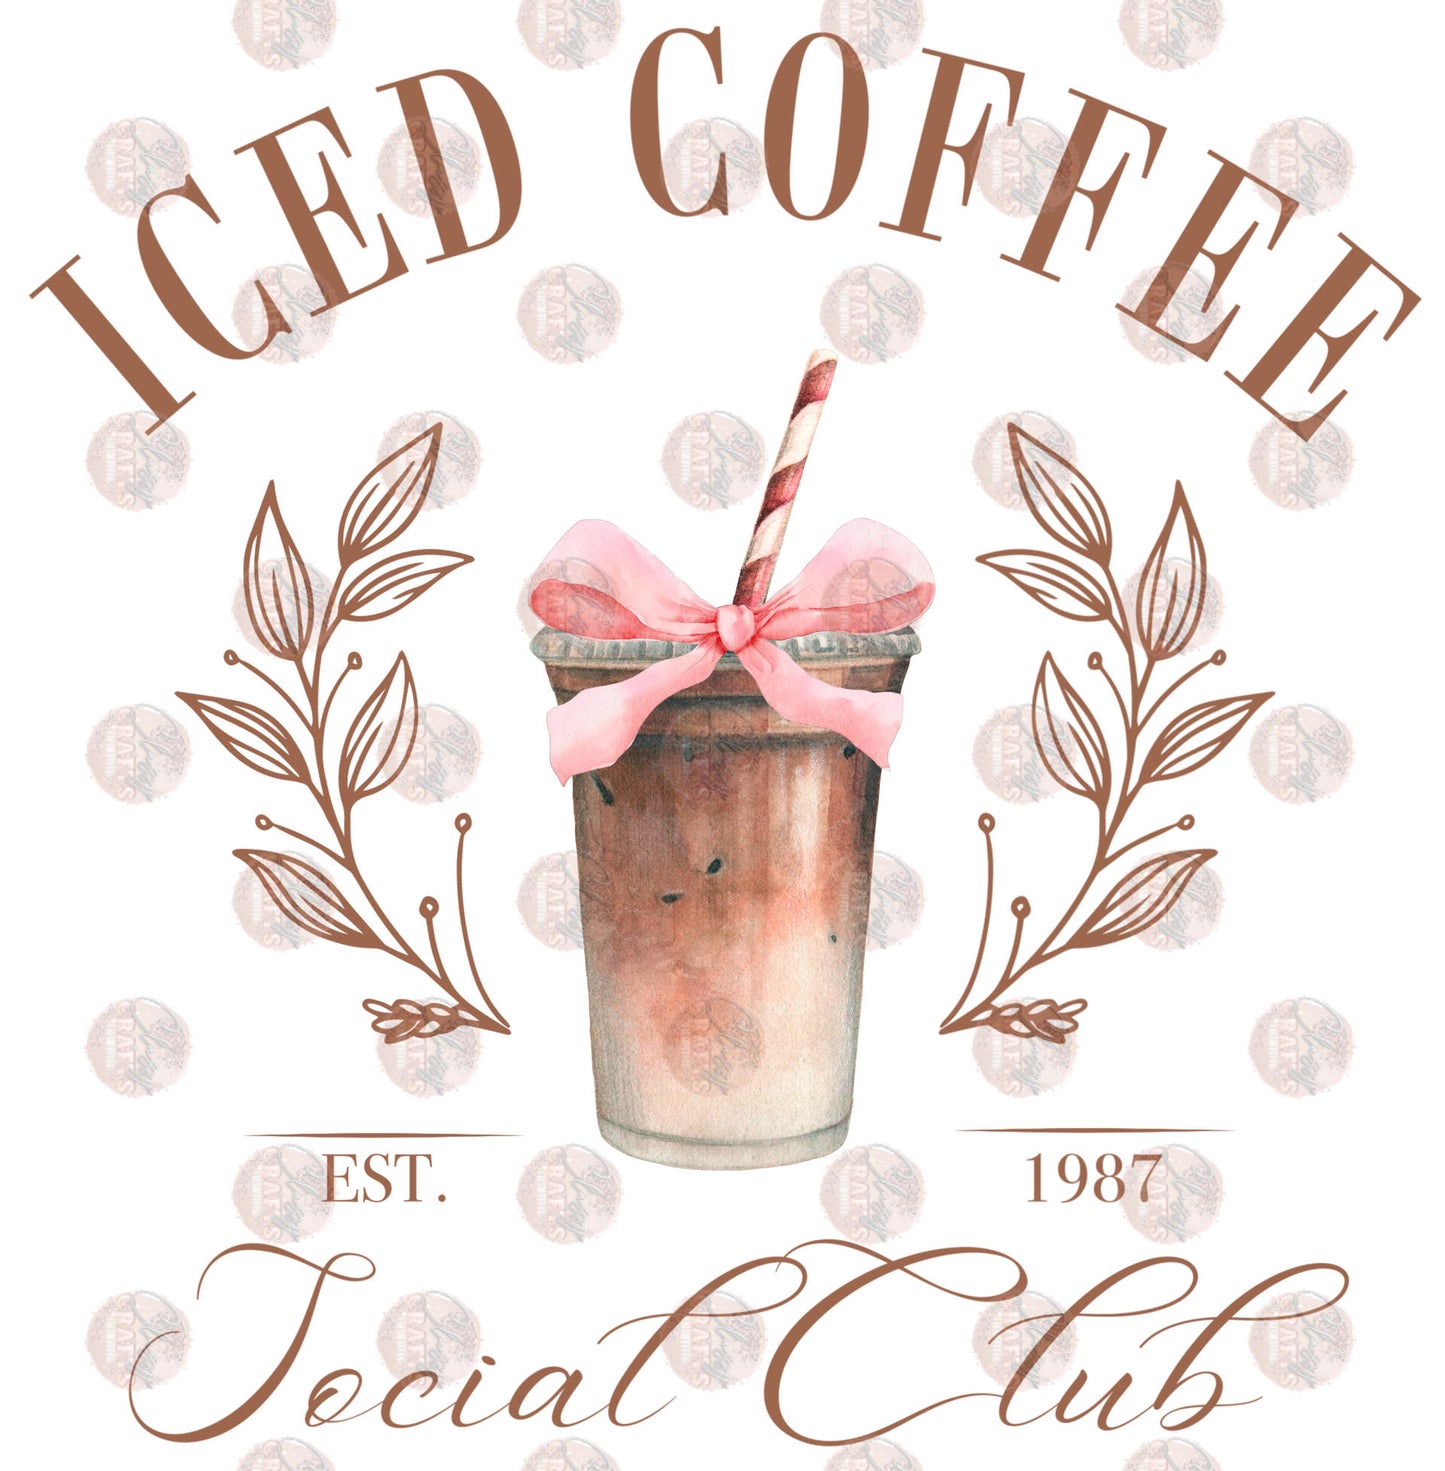 Iced Coffee Club Transfer